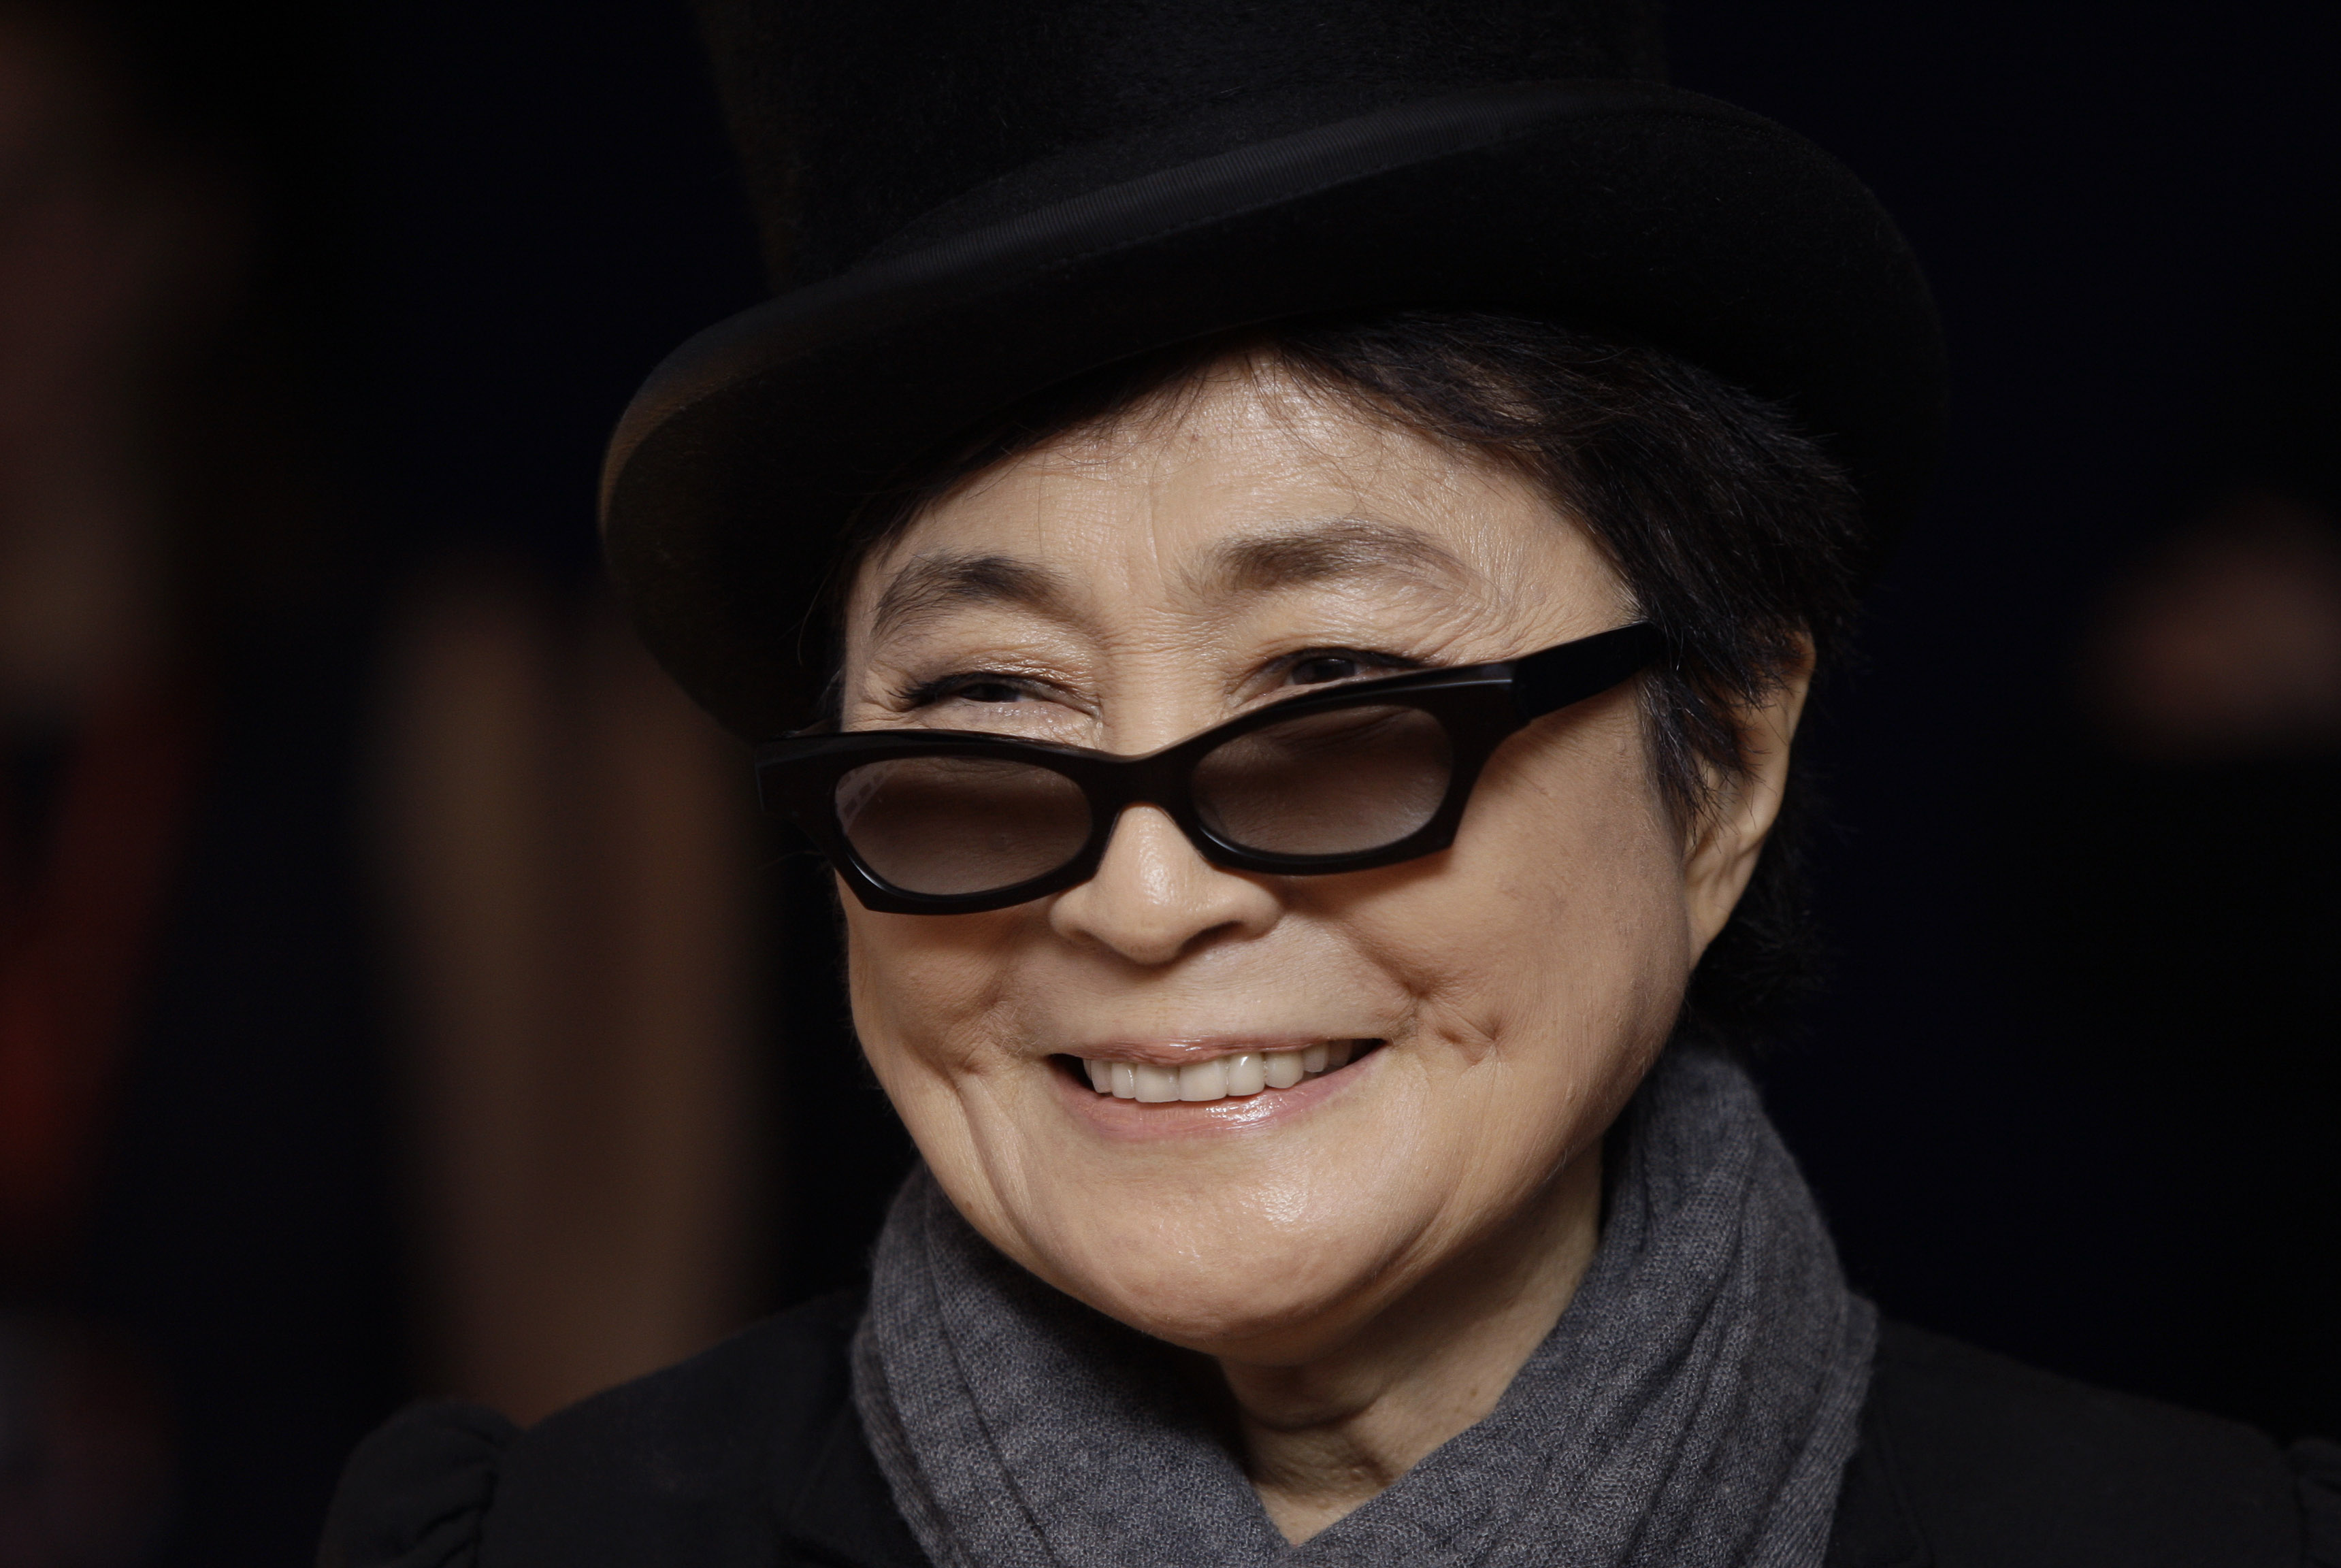 Yoko Ono gifte sig 1969 med Lennon på Gibraltar. De var fortfarande gifta när Lennon mördades.